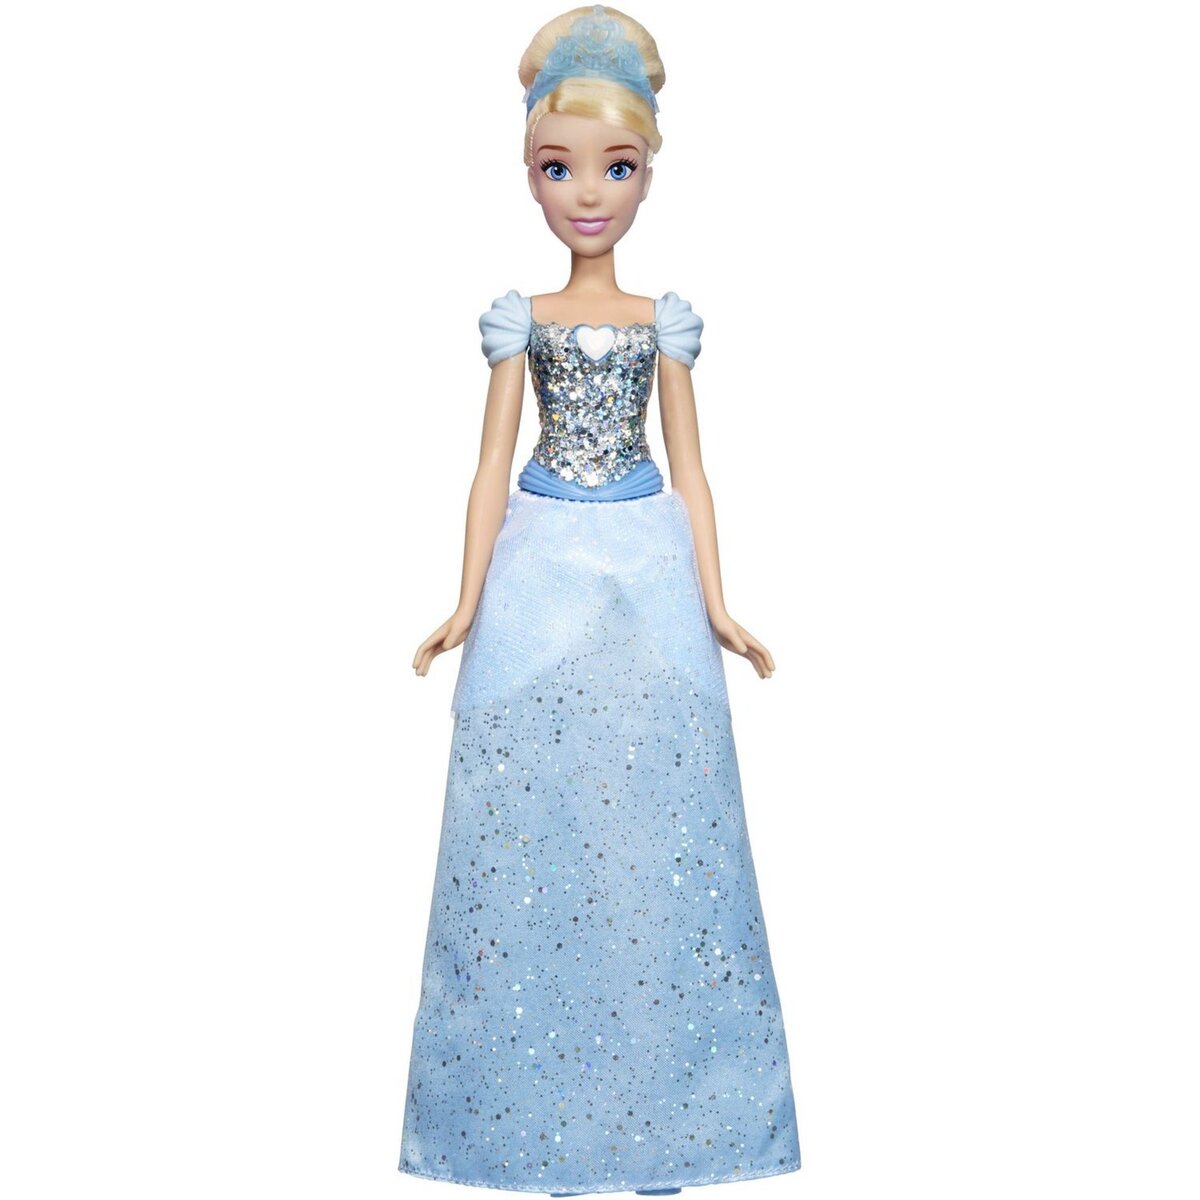 HASBRO Poupée Cendrillon poussière d'étoiles - Disney Princesses